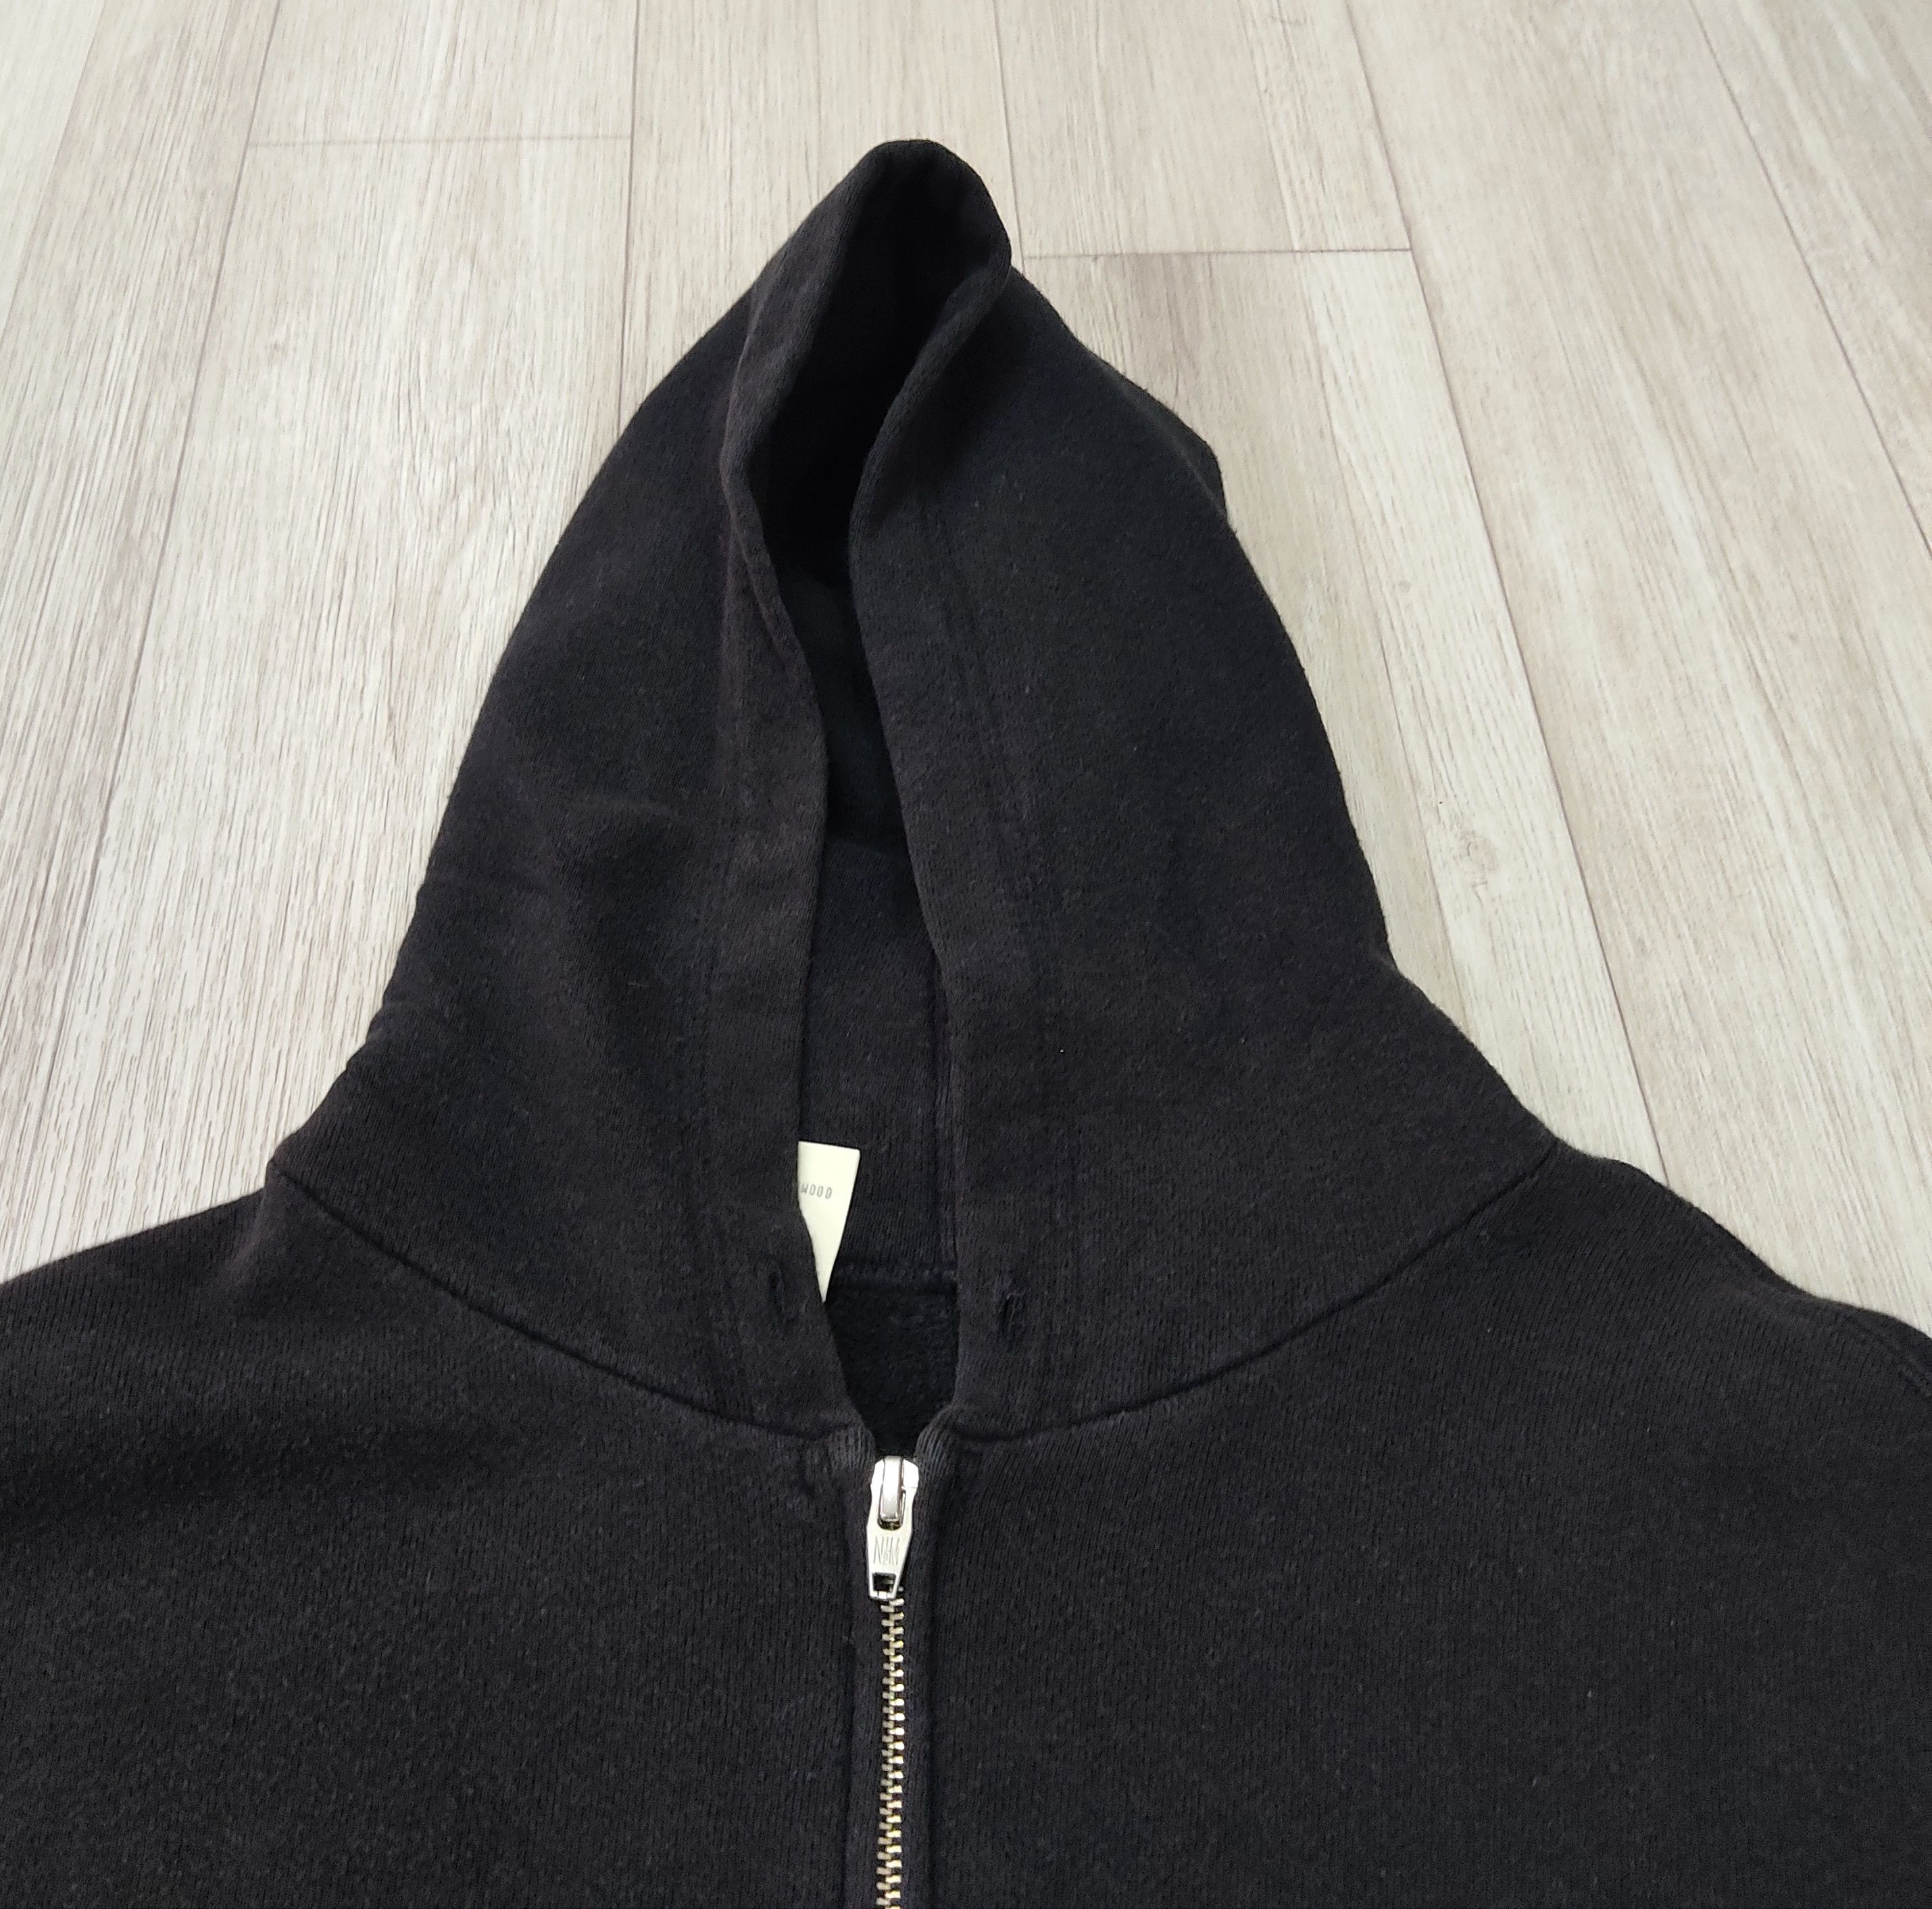 N. HOOLYWOOD Plain Black Zipper Hoodie Sweatshirt - 4